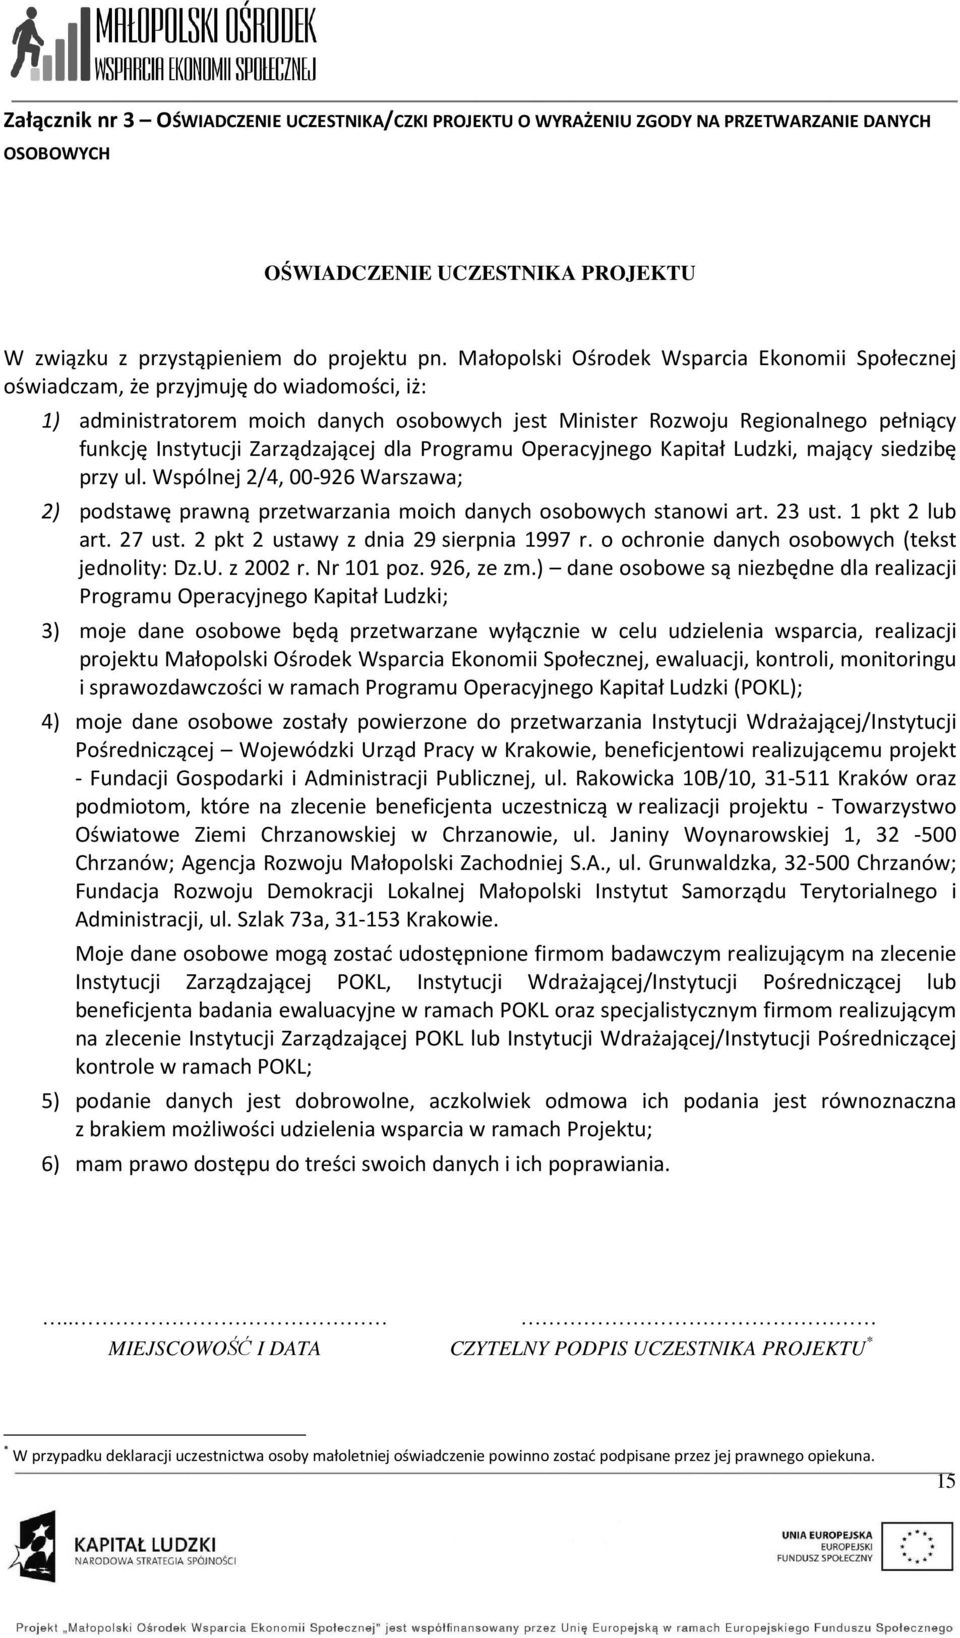 Zarządzającej dla Programu Operacyjnego Kapitał Ludzki, mający siedzibę przy ul. Wspólnej 2/4, 00-926 Warszawa; 2) podstawę prawną przetwarzania moich danych osobowych stanowi art. 23 ust.